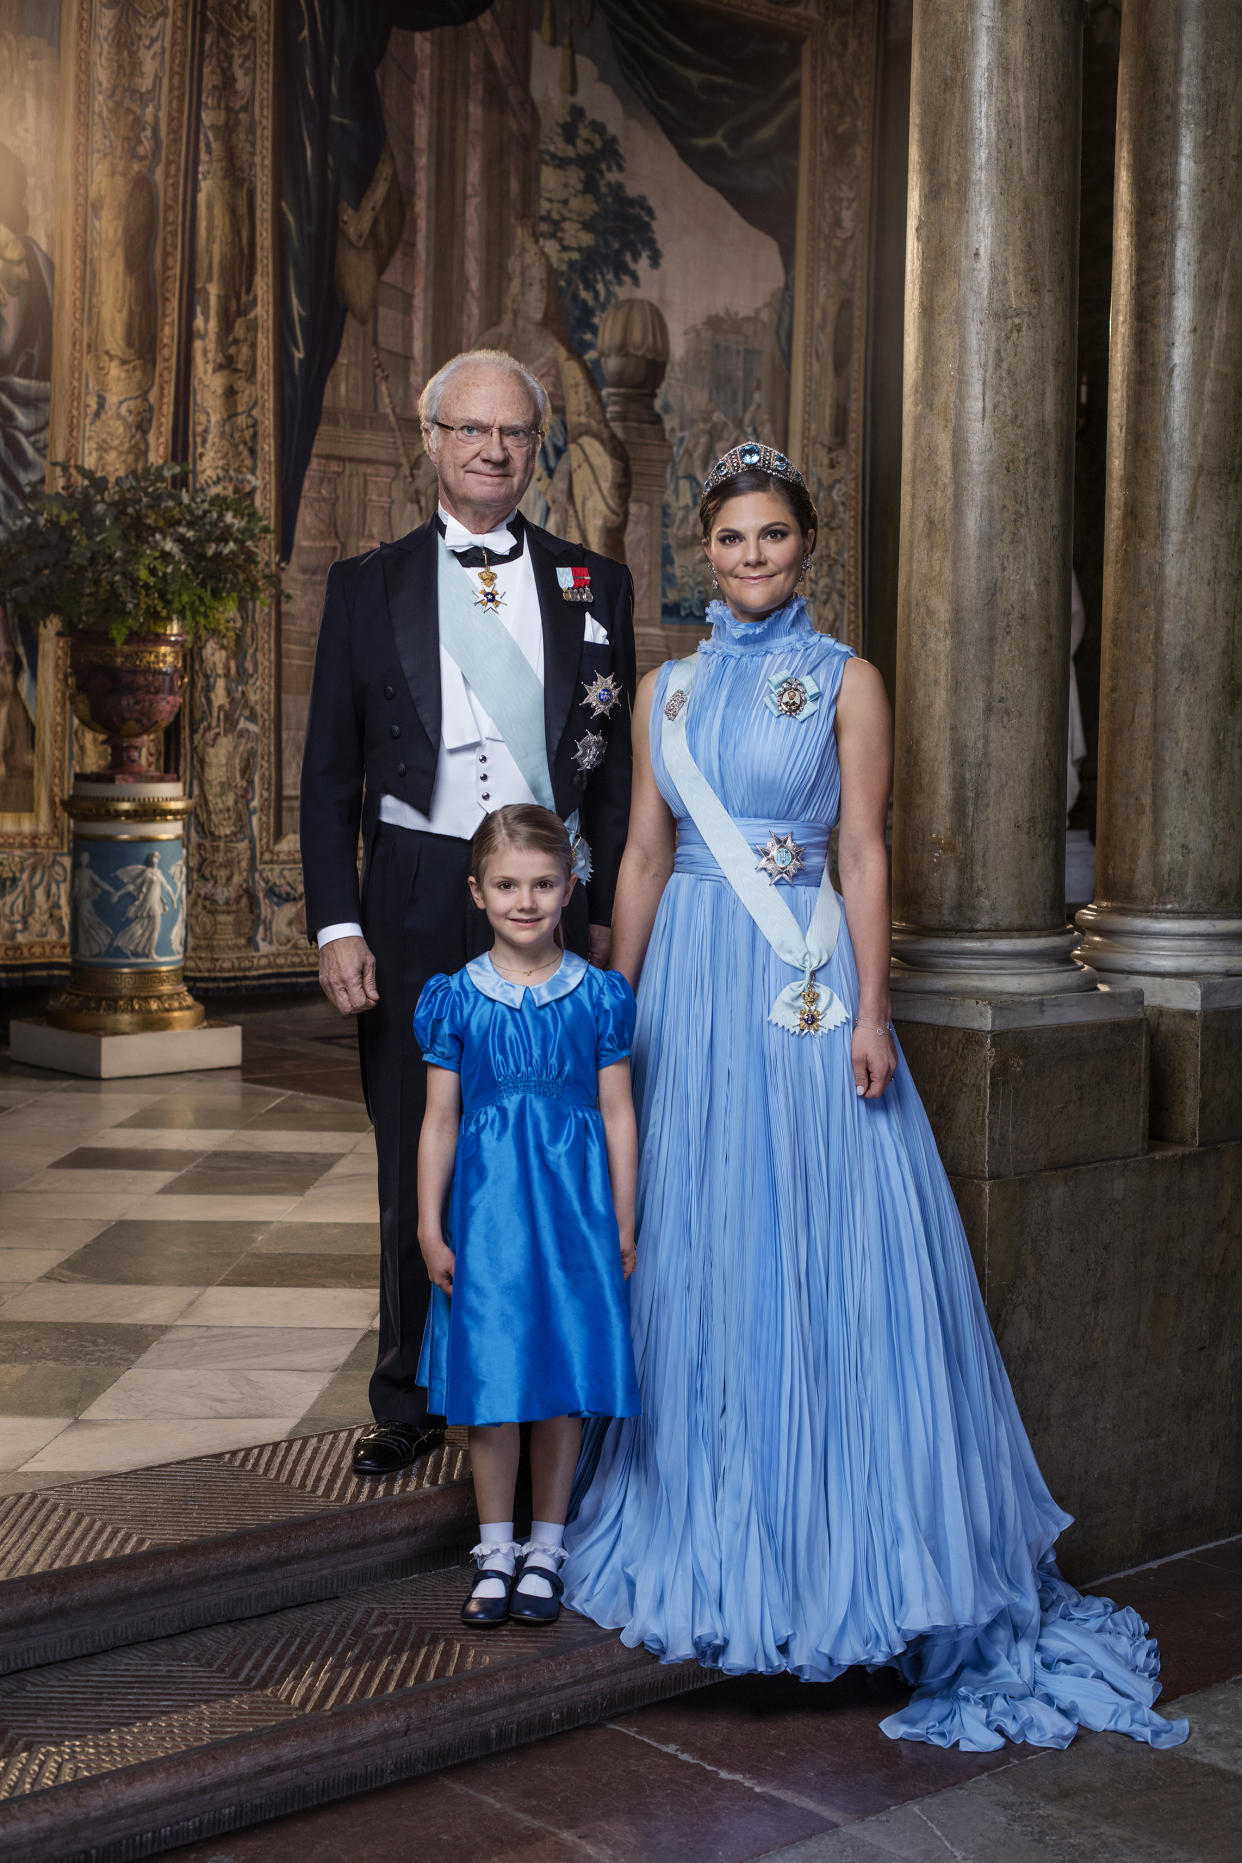 Das schwedische Königshaus hat das 200-jährige Jubiläum der Bernadotte-Dynastie gefeiert. (Bild: Kungahuset.se)